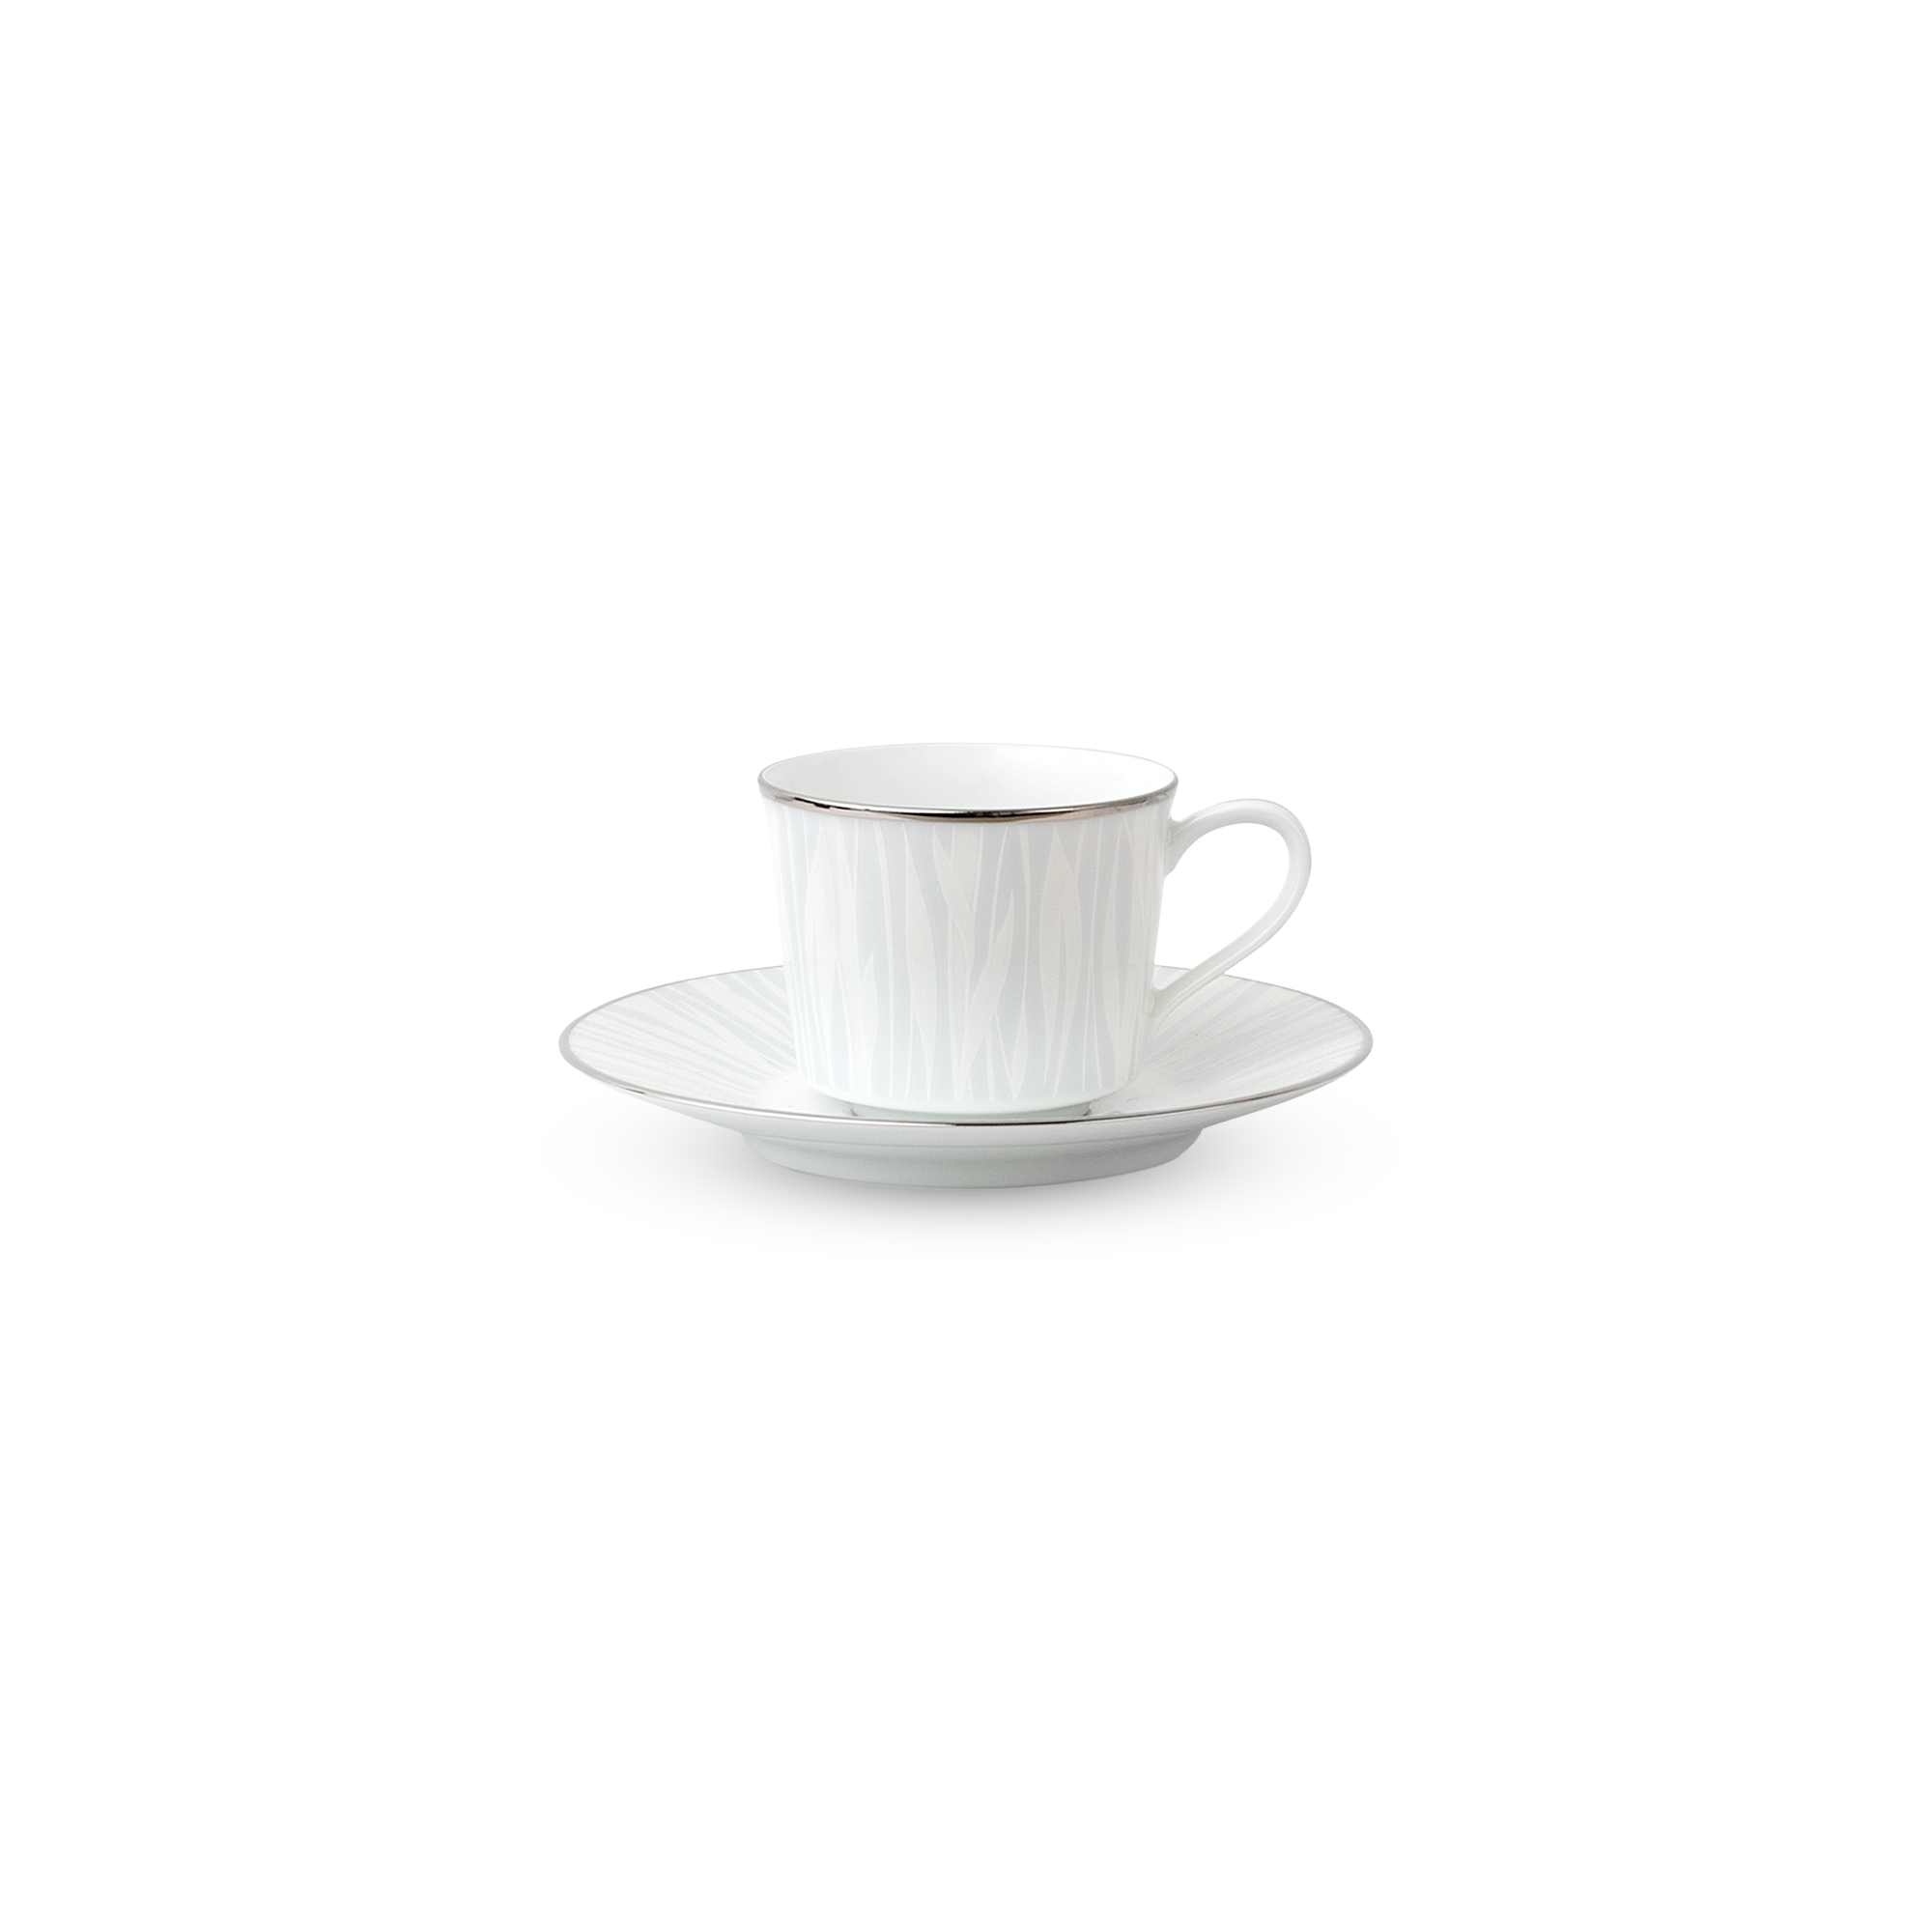  Chén trà (tách trà) kèm đĩa lót dung tích 100ml sứ trắng | Glacier Platinum 1702L-T91992 